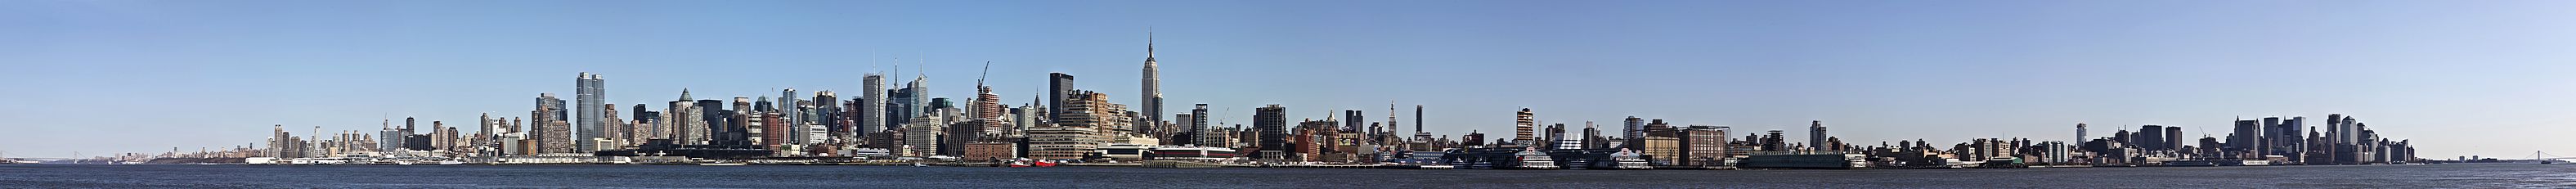 Manhattan'ın New Jersey eyaletinin Hoboken şehrinden görünümü. Hudson Nehri'nin sol köşesinde George Washington Köprüsü, ortasında Chrysler Binası, Empire State Binası, sağ köşesinde Verrazano-Narrows Köprüsü görülmektedir. (Üreten: Jnn13)